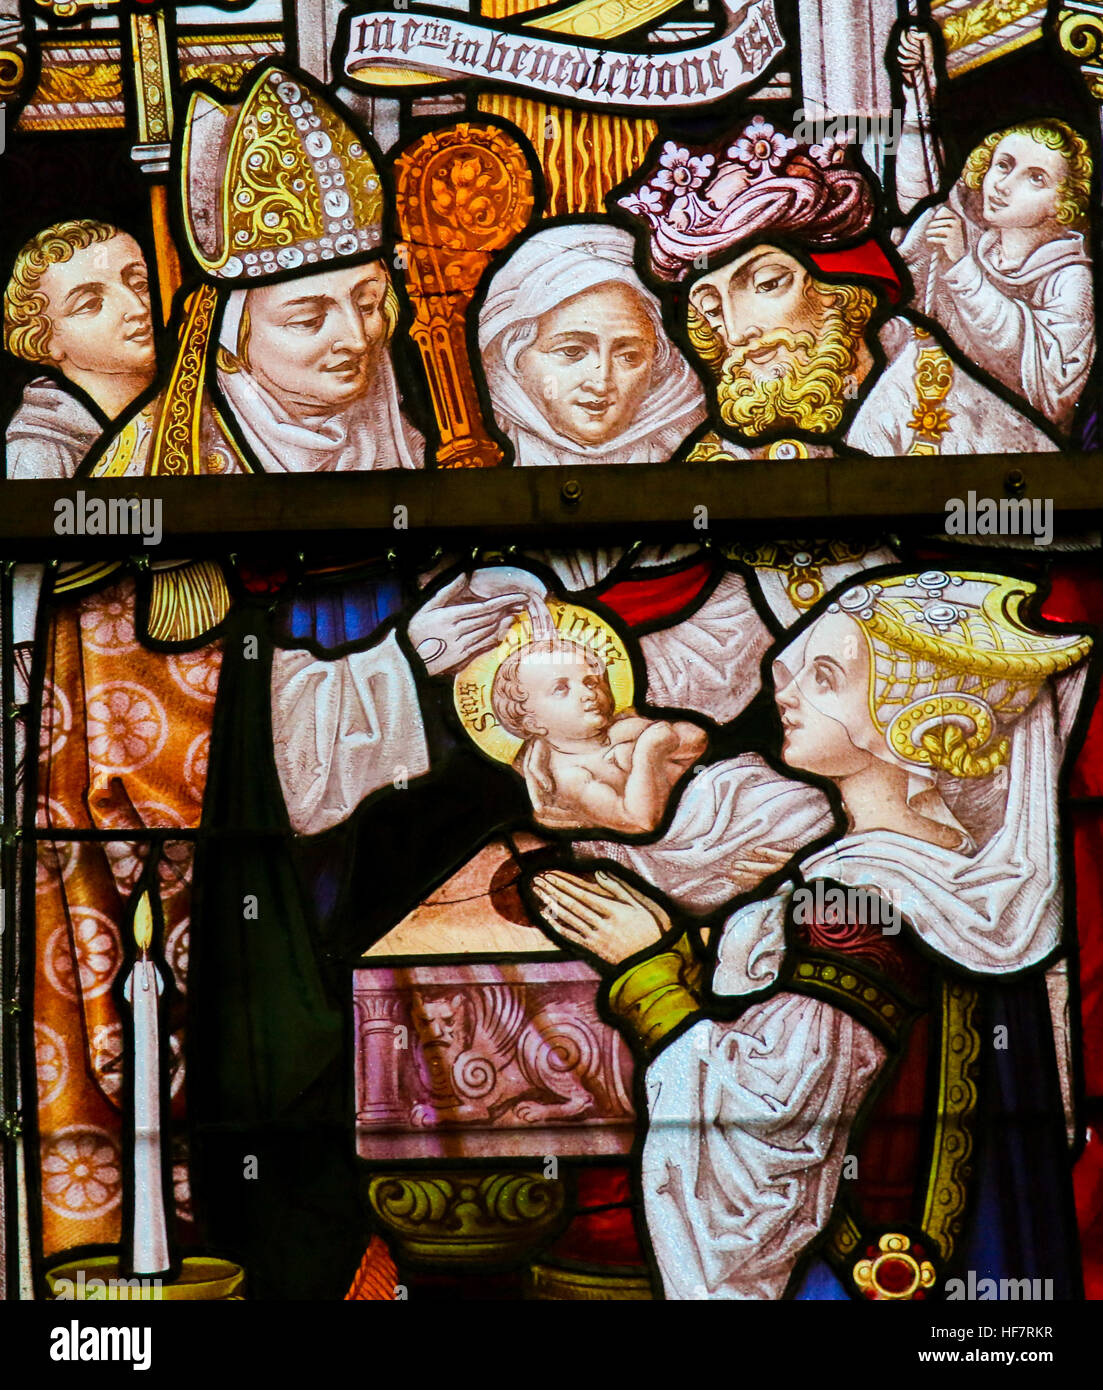 Vitrales representando el bautismo de San Livinus de Gante, apóstol en Flandes y Brabante, en la Catedral de San Bavón en Gante, Bélgica. Foto de stock